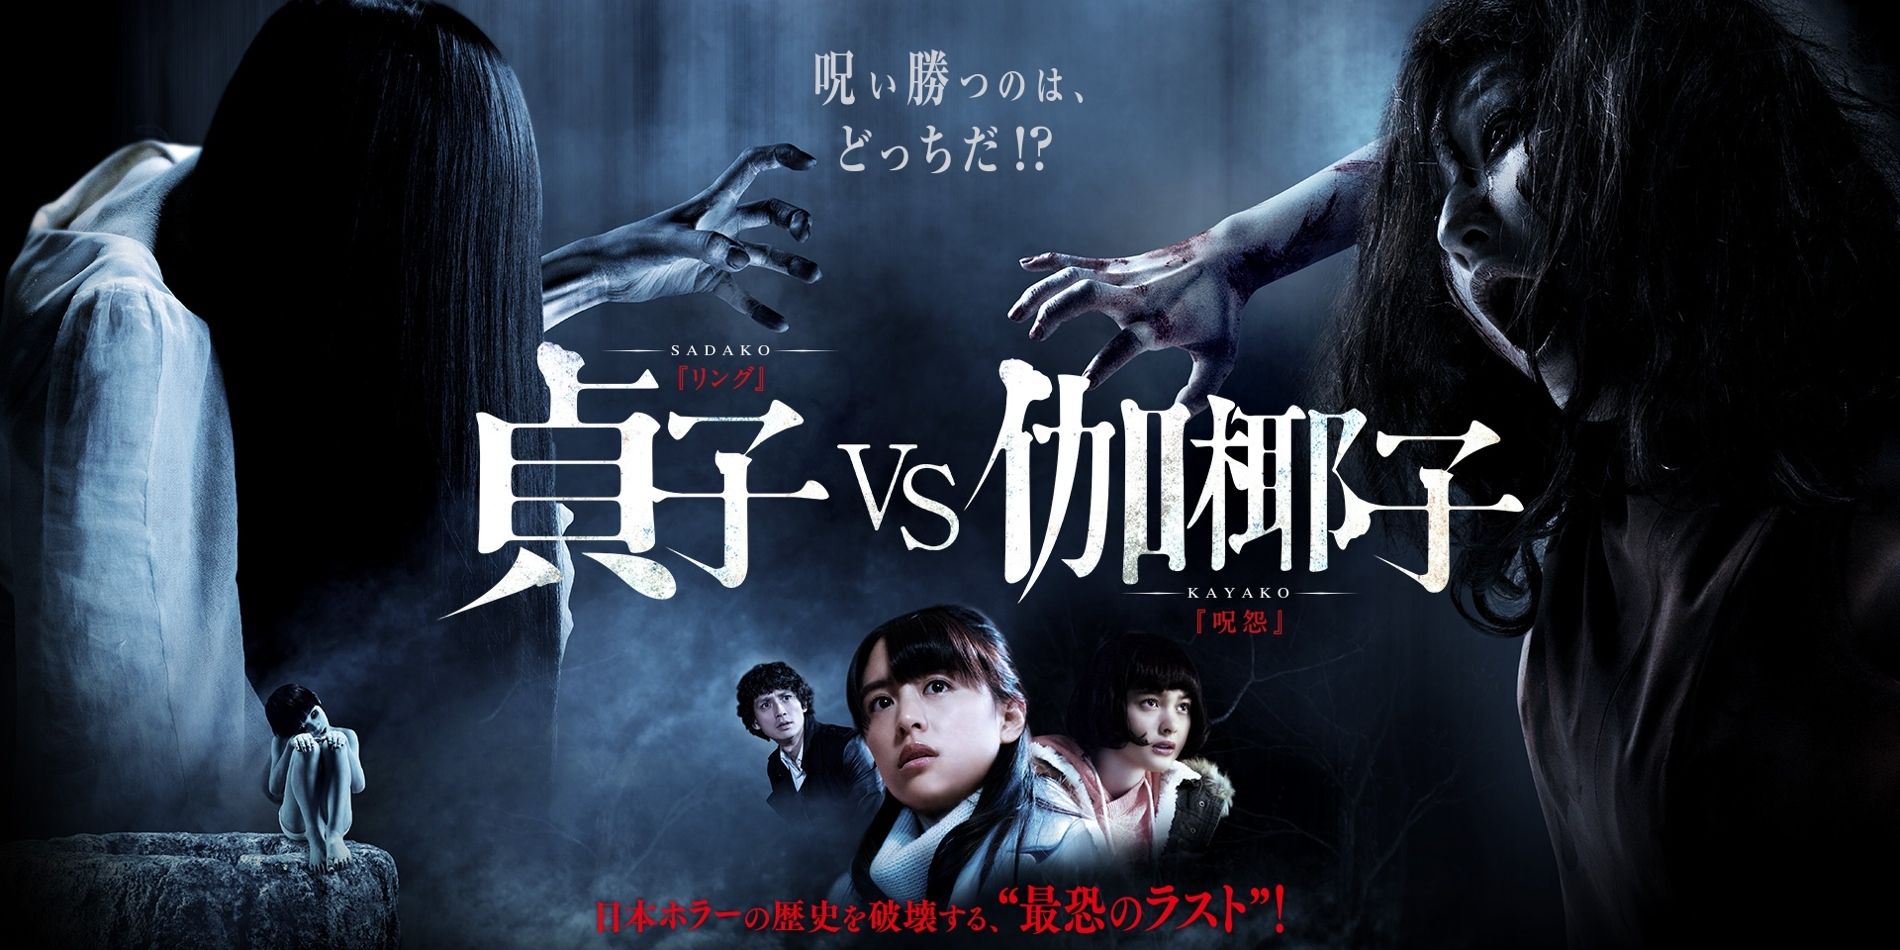 Sadako vs Kayako Movie Reviews